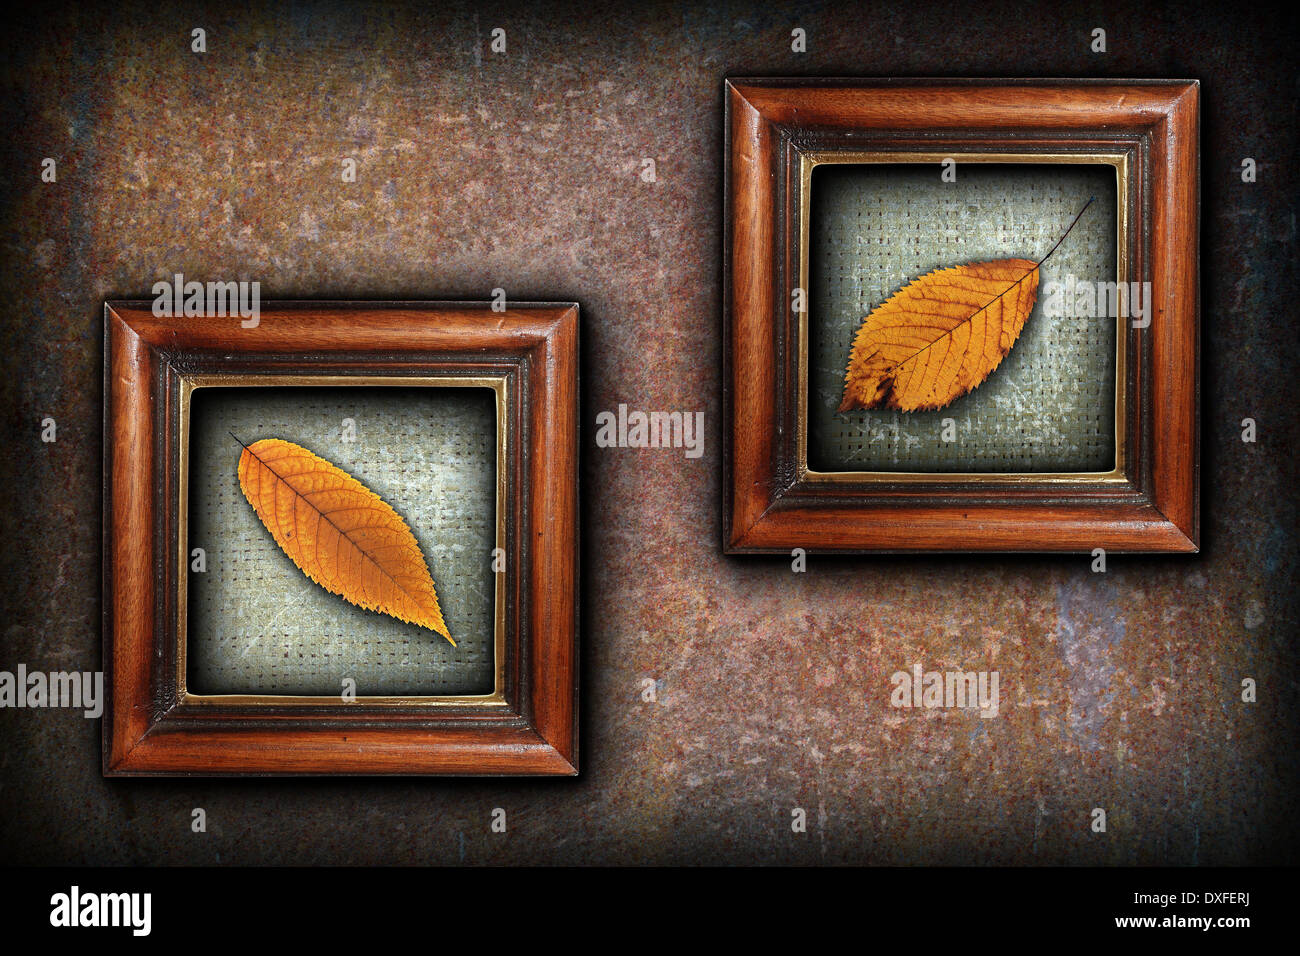 Visualizzazione dei simboli in autunno, bello golden cherry sbiadito lascia nella vecchia verniciatura telai in legno Foto Stock